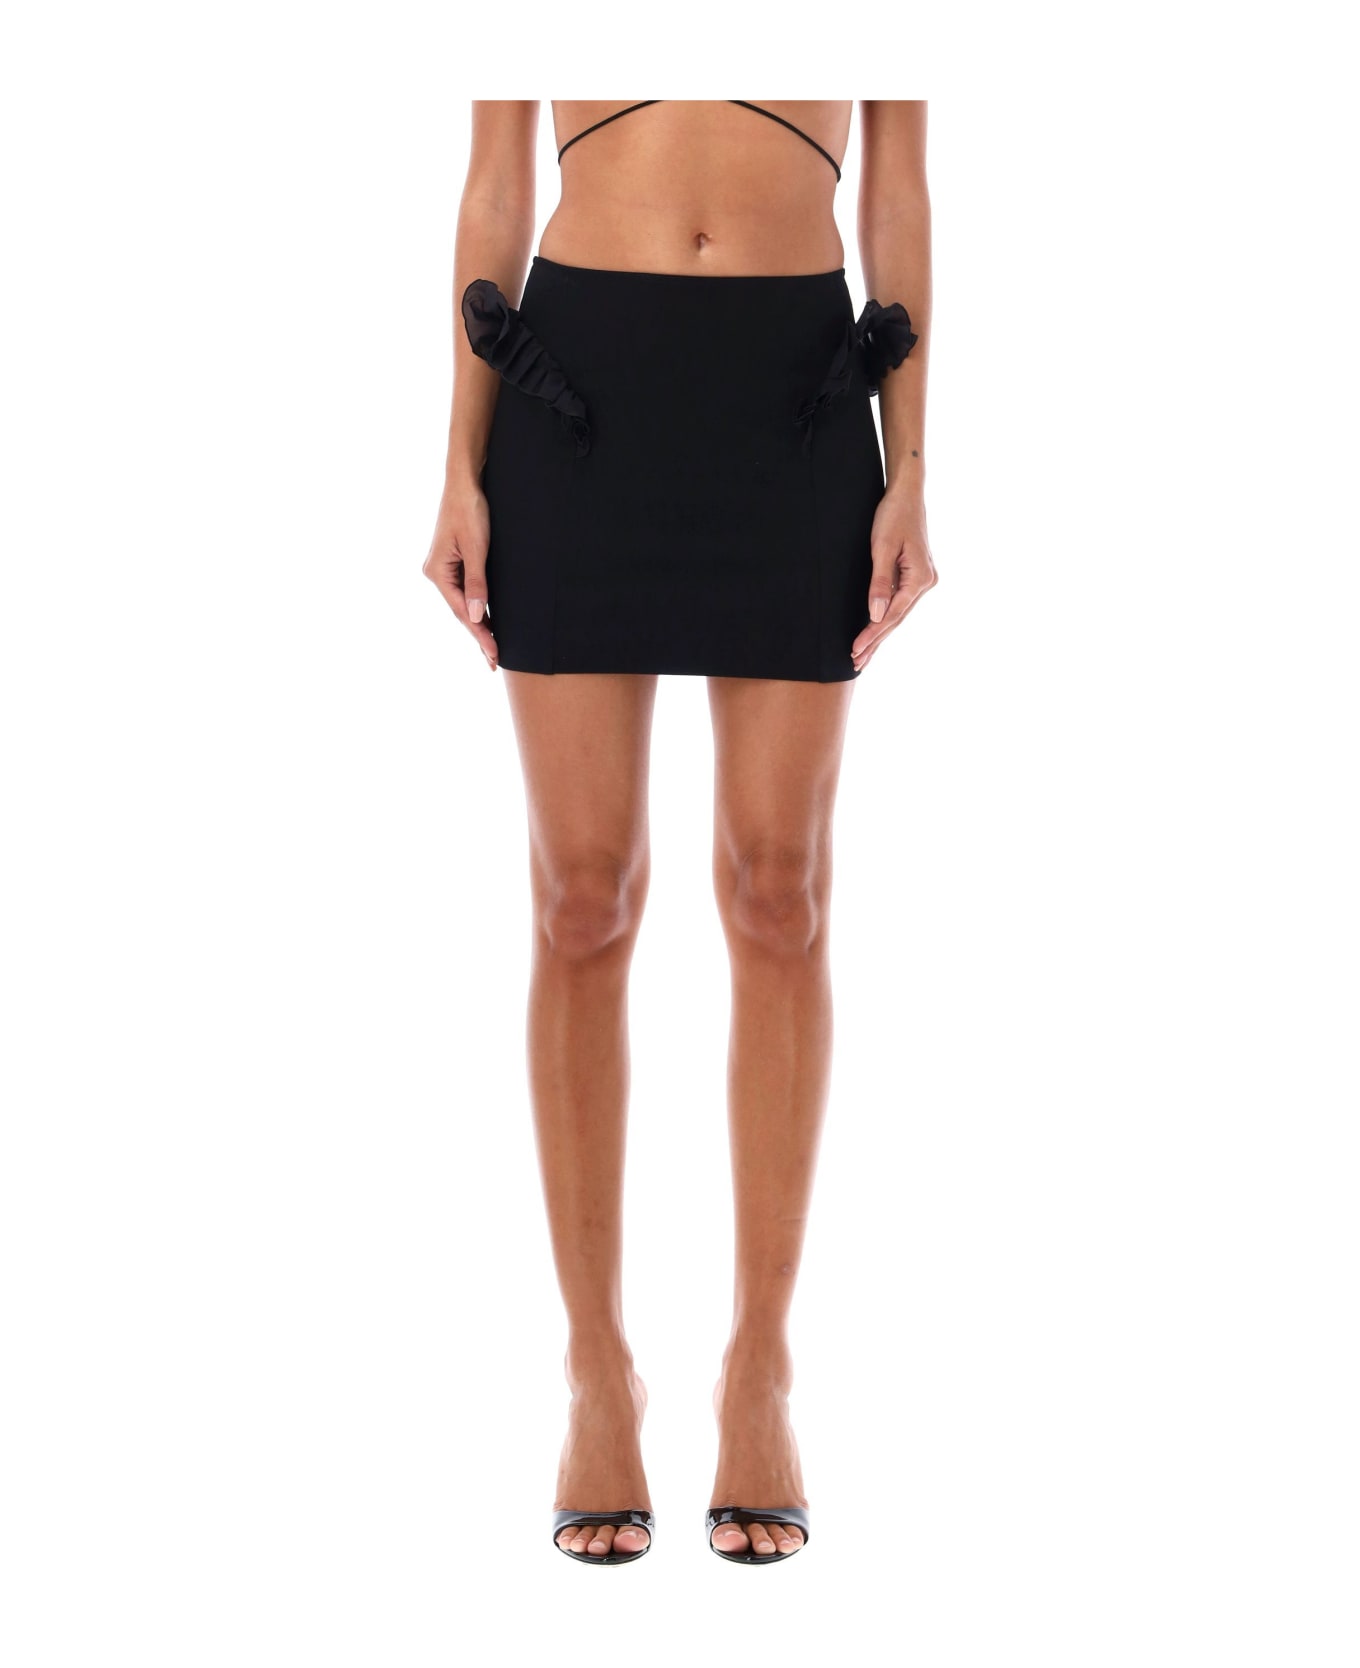 Nensi Dojaka Frilled Mini Skirt - BLACK スカート